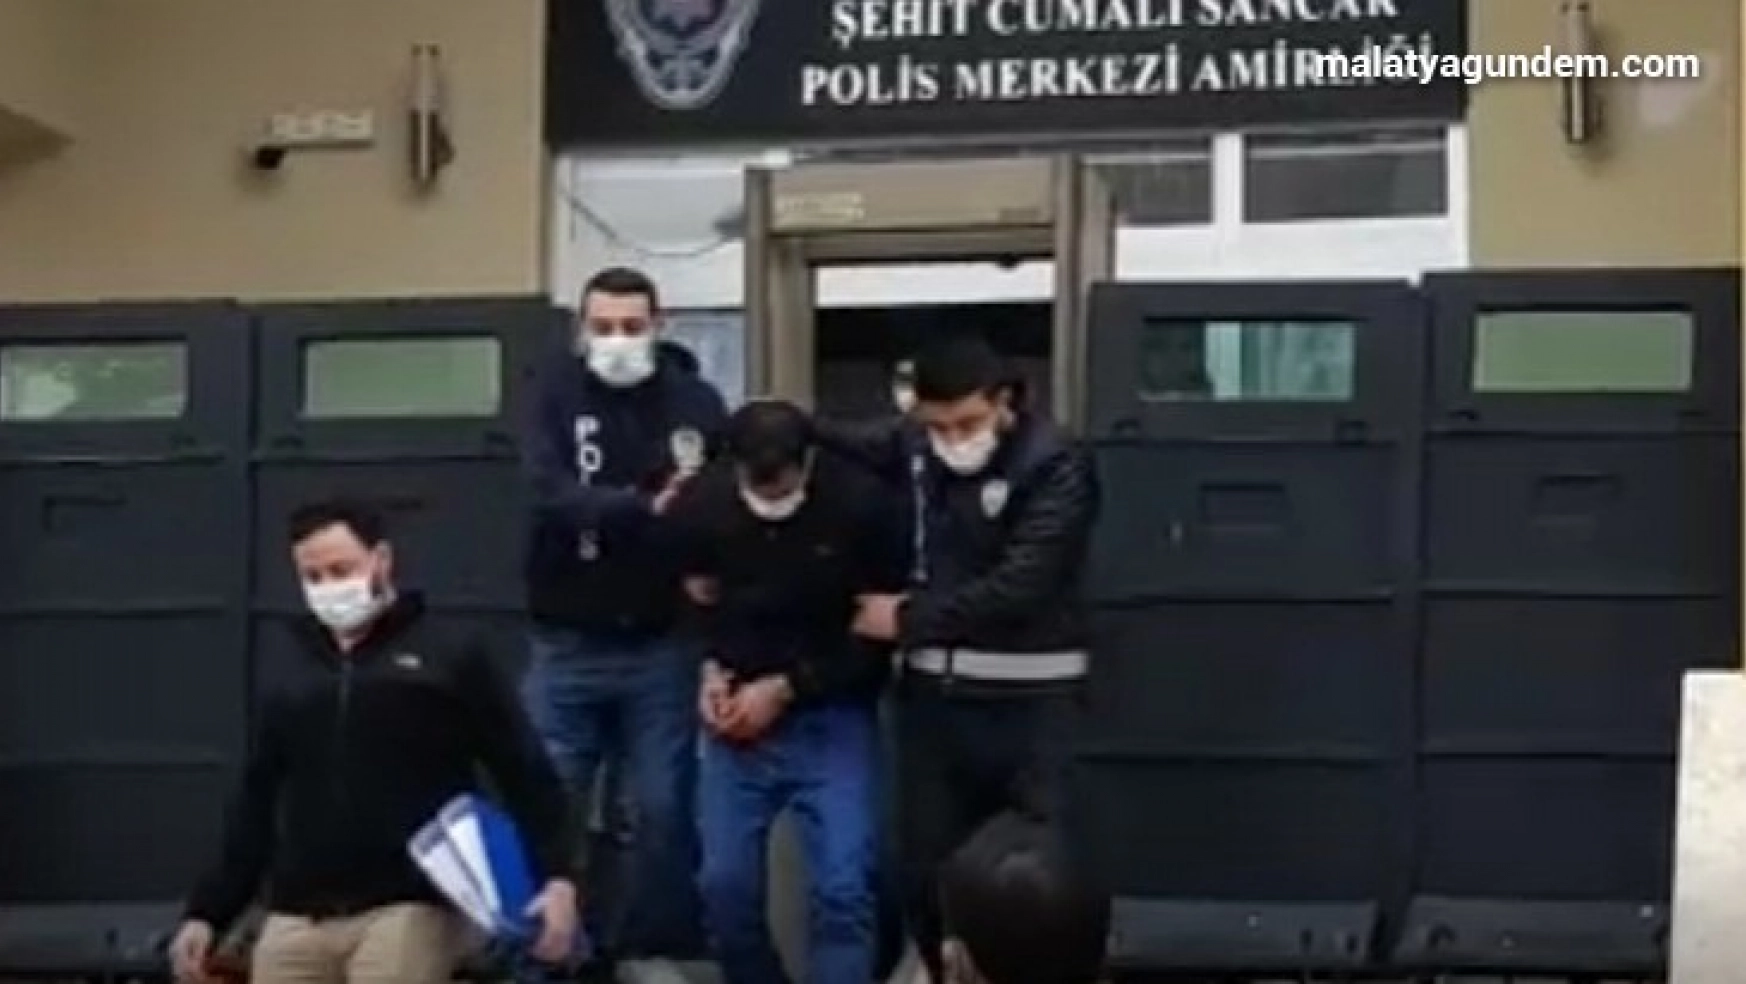 Malatya'daki bıçakla öldürme olayına 4 tutuklama